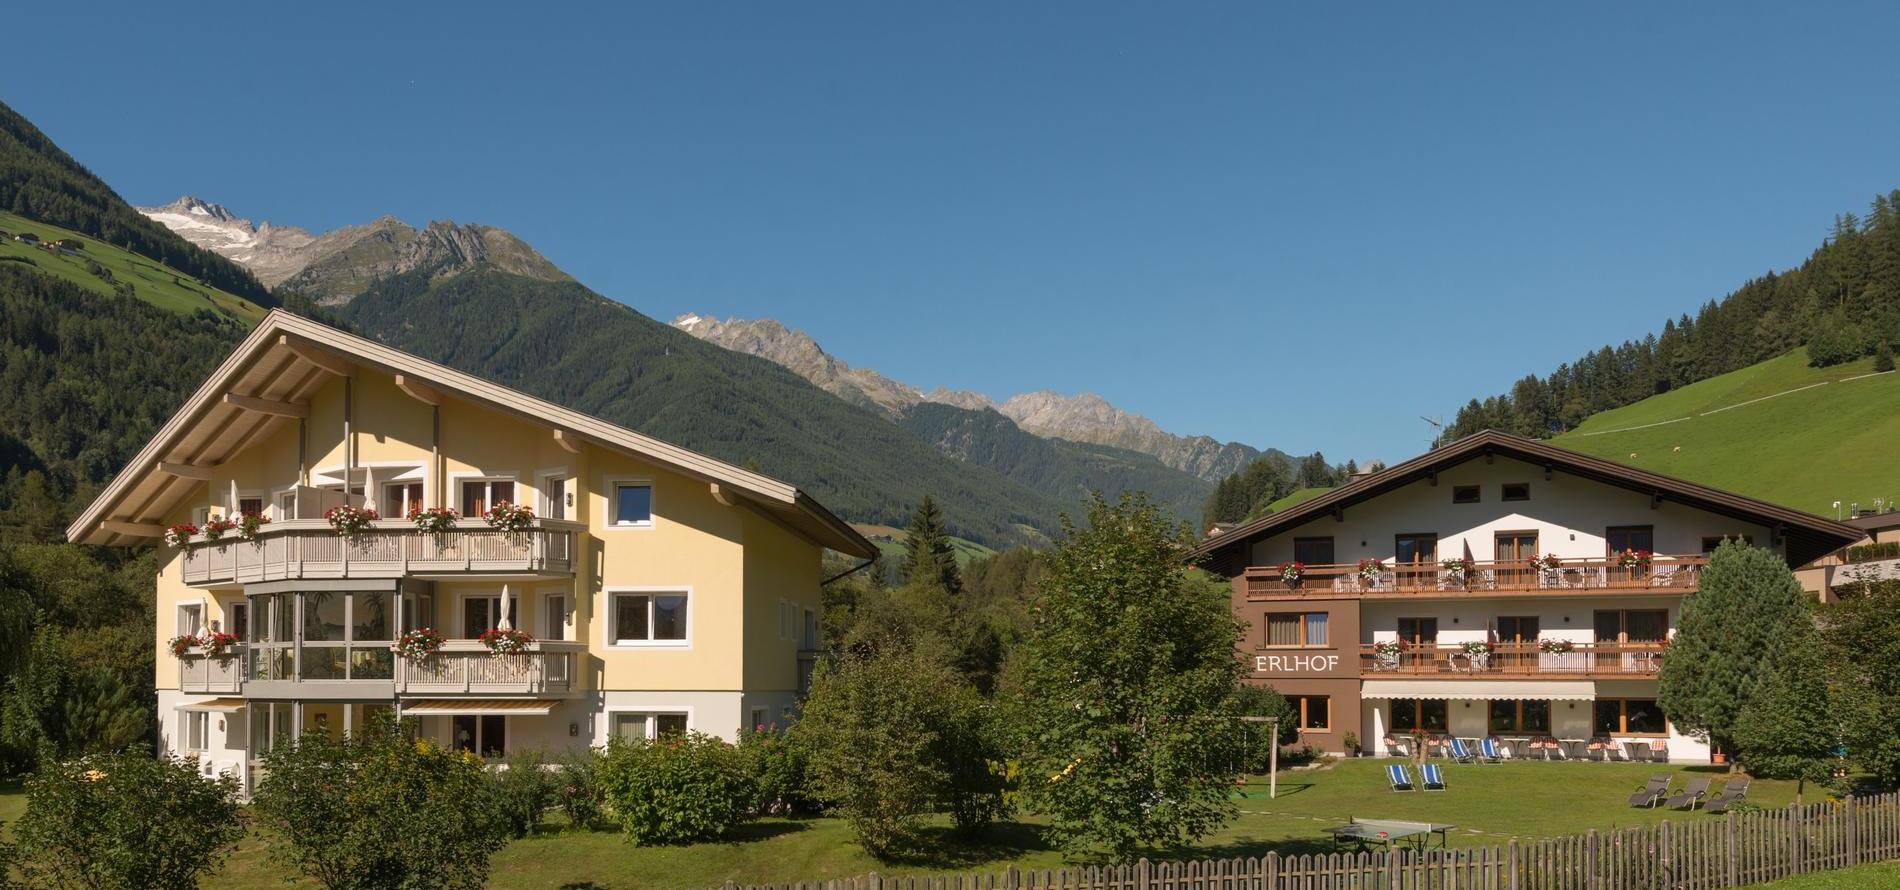 Vostra vacanza in Alto Adige tra le montagne della Valle Aurina!